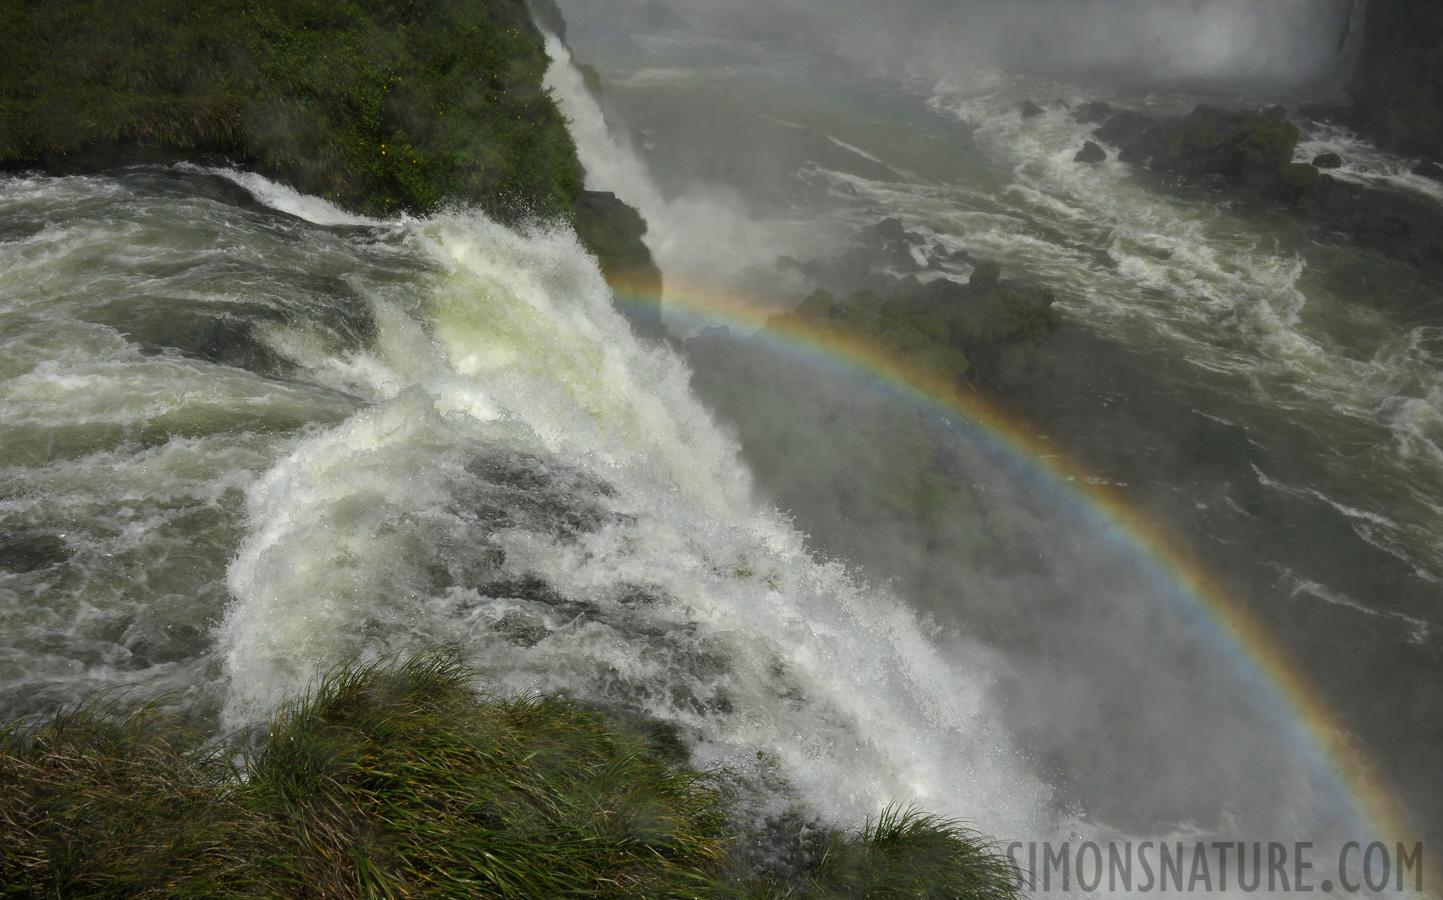 Cataratas del Iguazu [28 mm, 1/320 sec at f / 18, ISO 250]